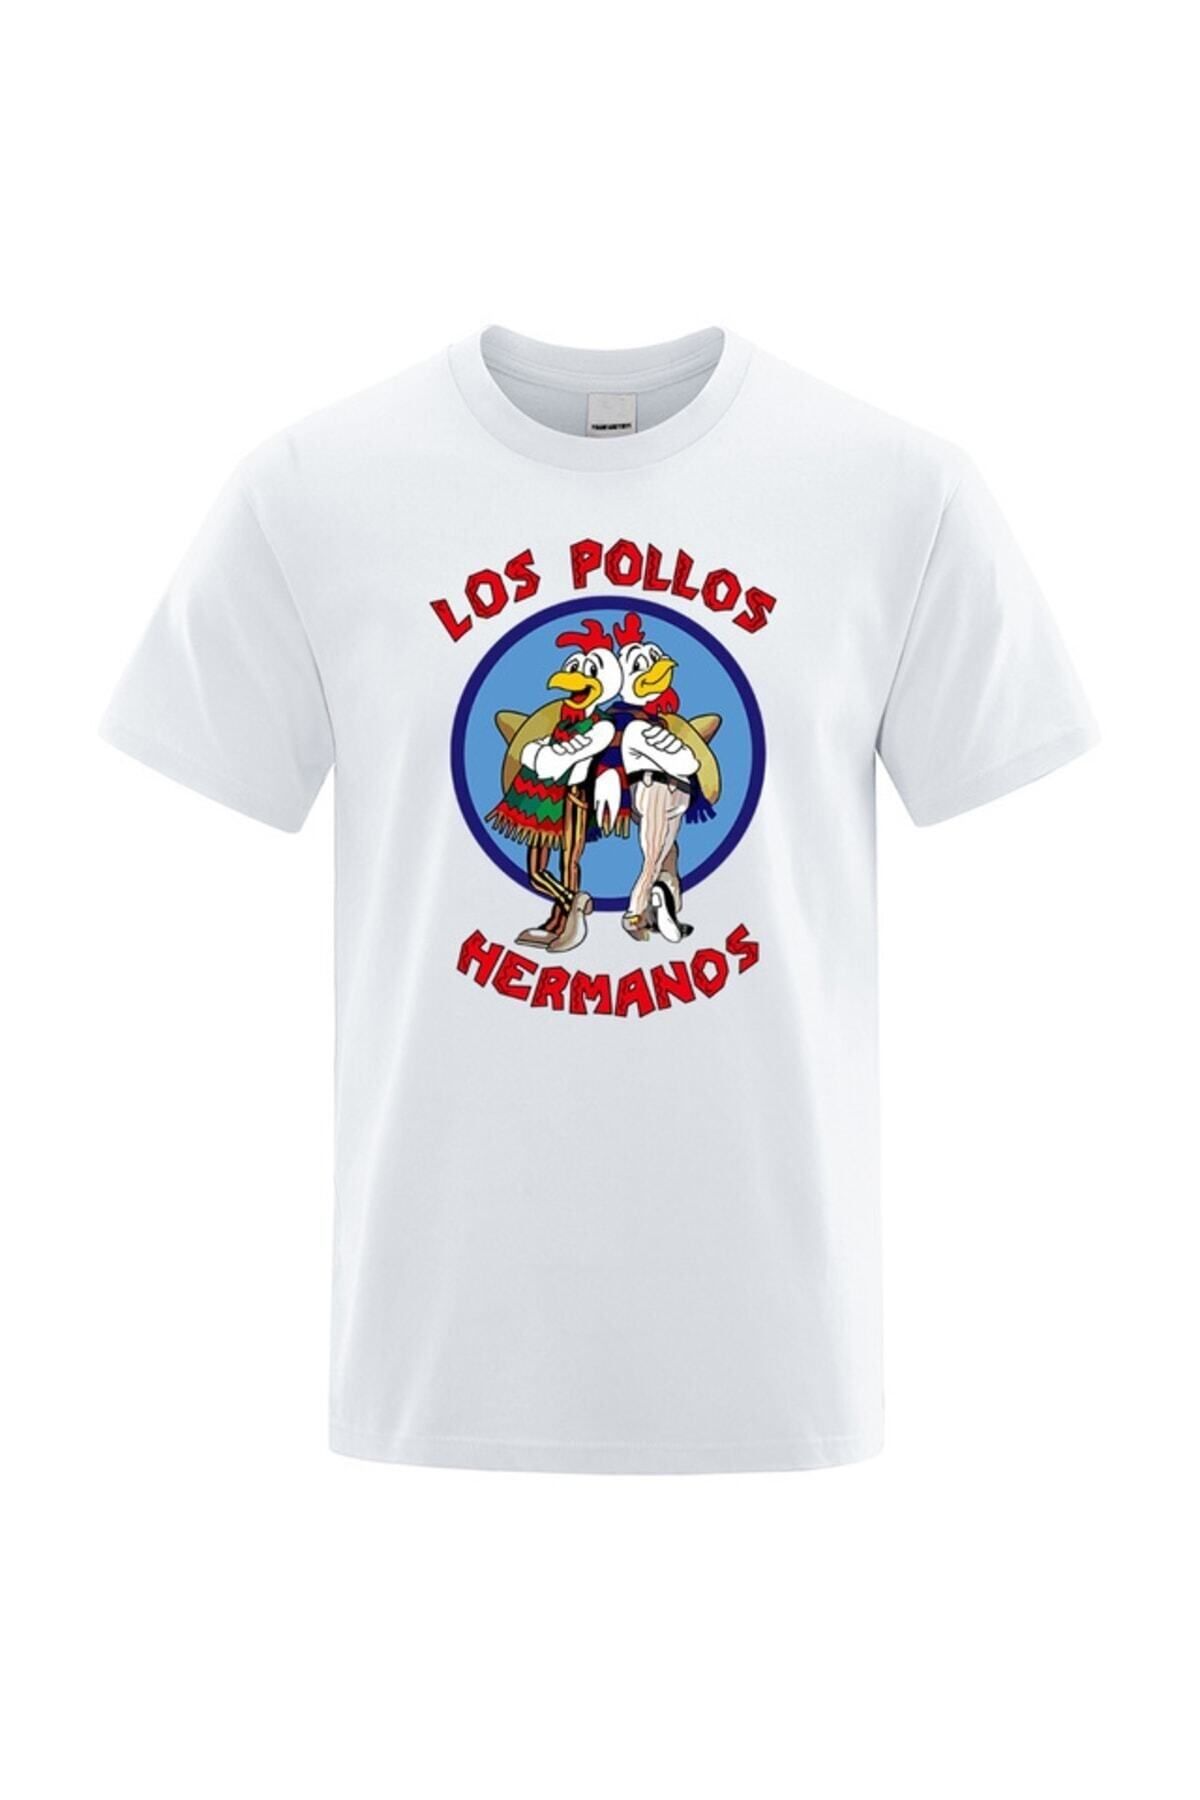 Advantage Trend Los Pollos Hermanos T-shirts 17454